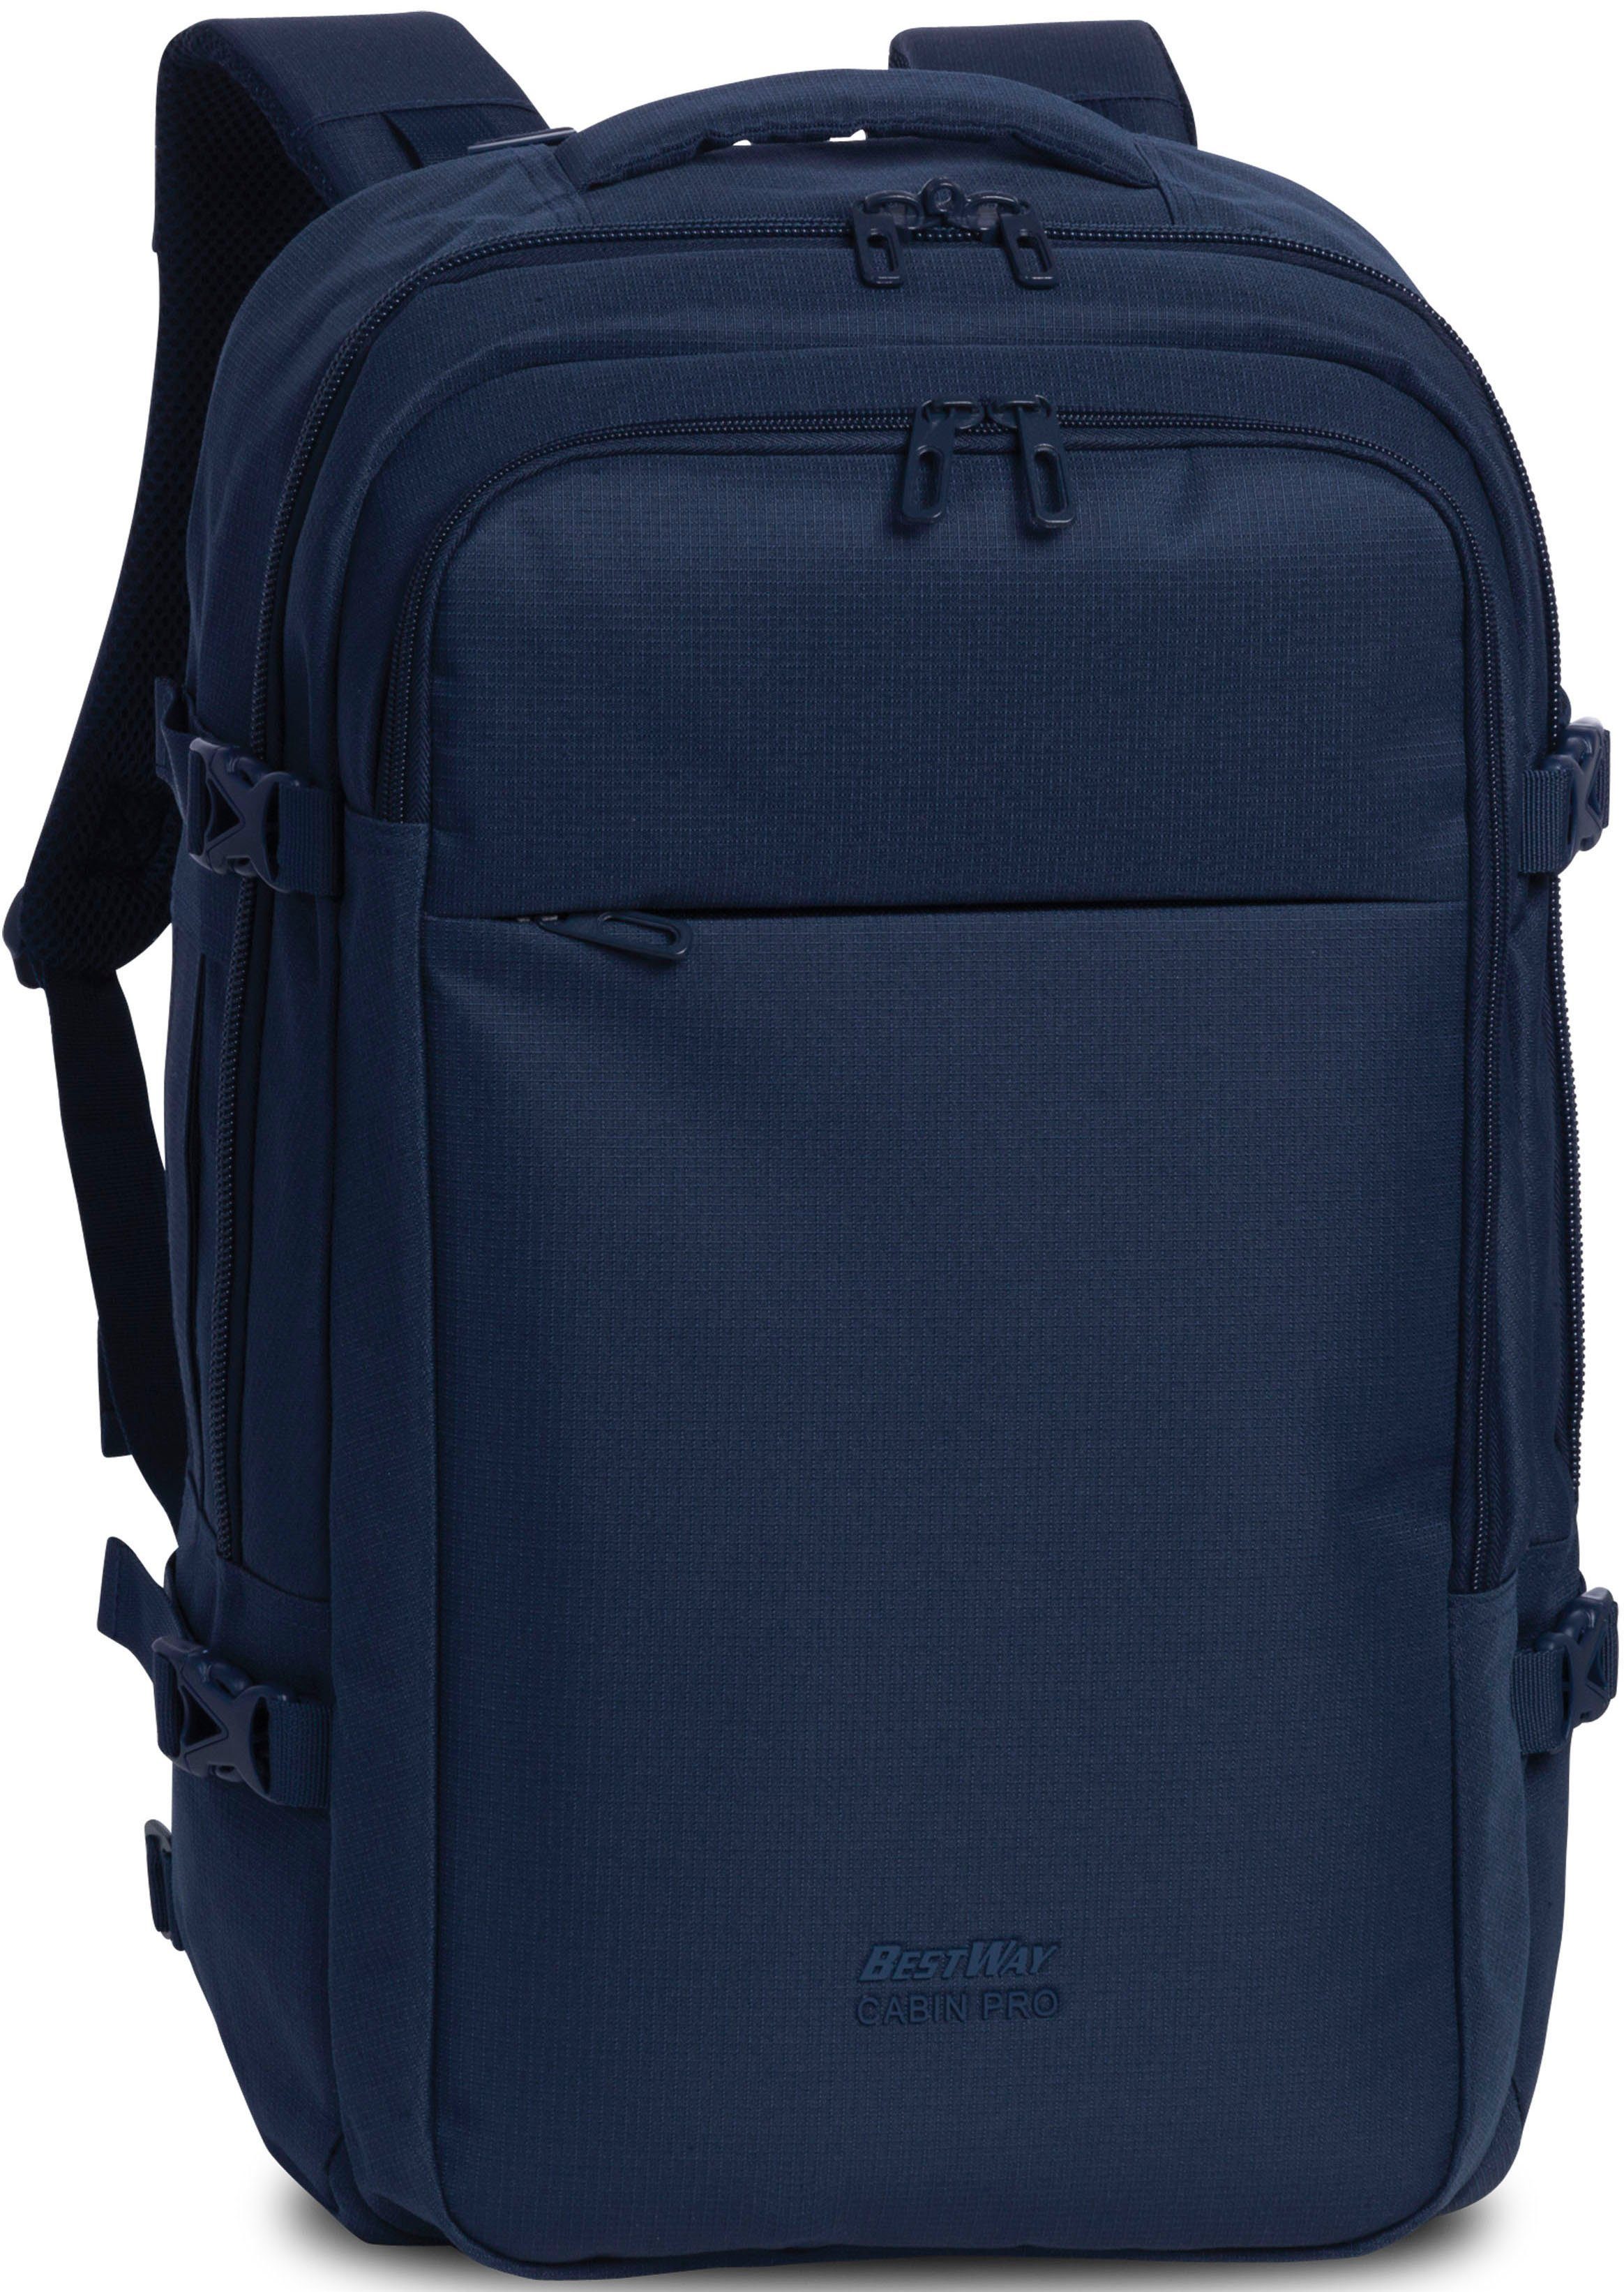 BESTWAY Reiserucksack Cabin Pro, 30 l, blau, mit Laptopfach dunkelblau